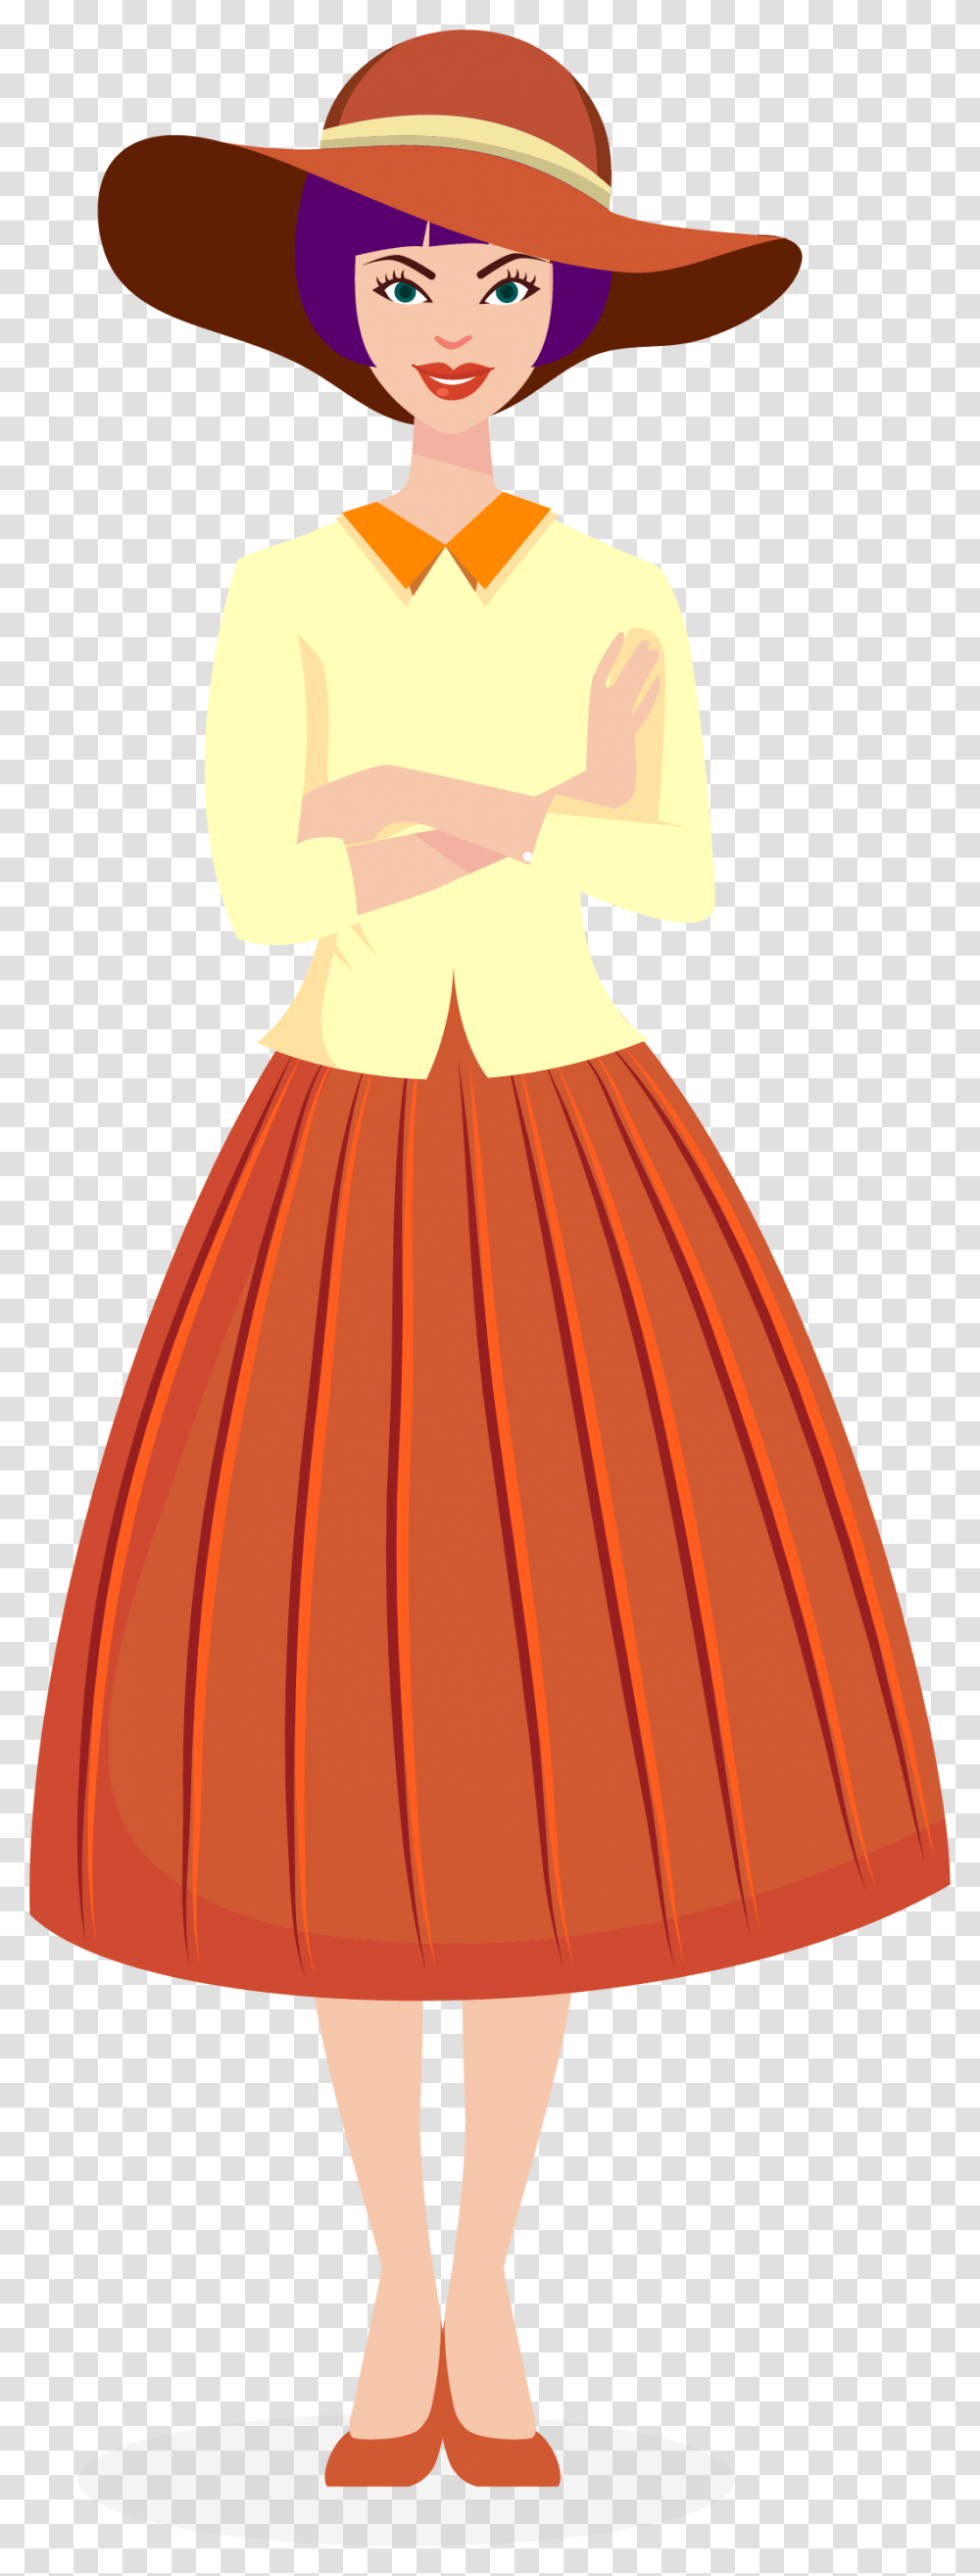 Miniskirt, Dress, Person, Evening Dress Transparent Png